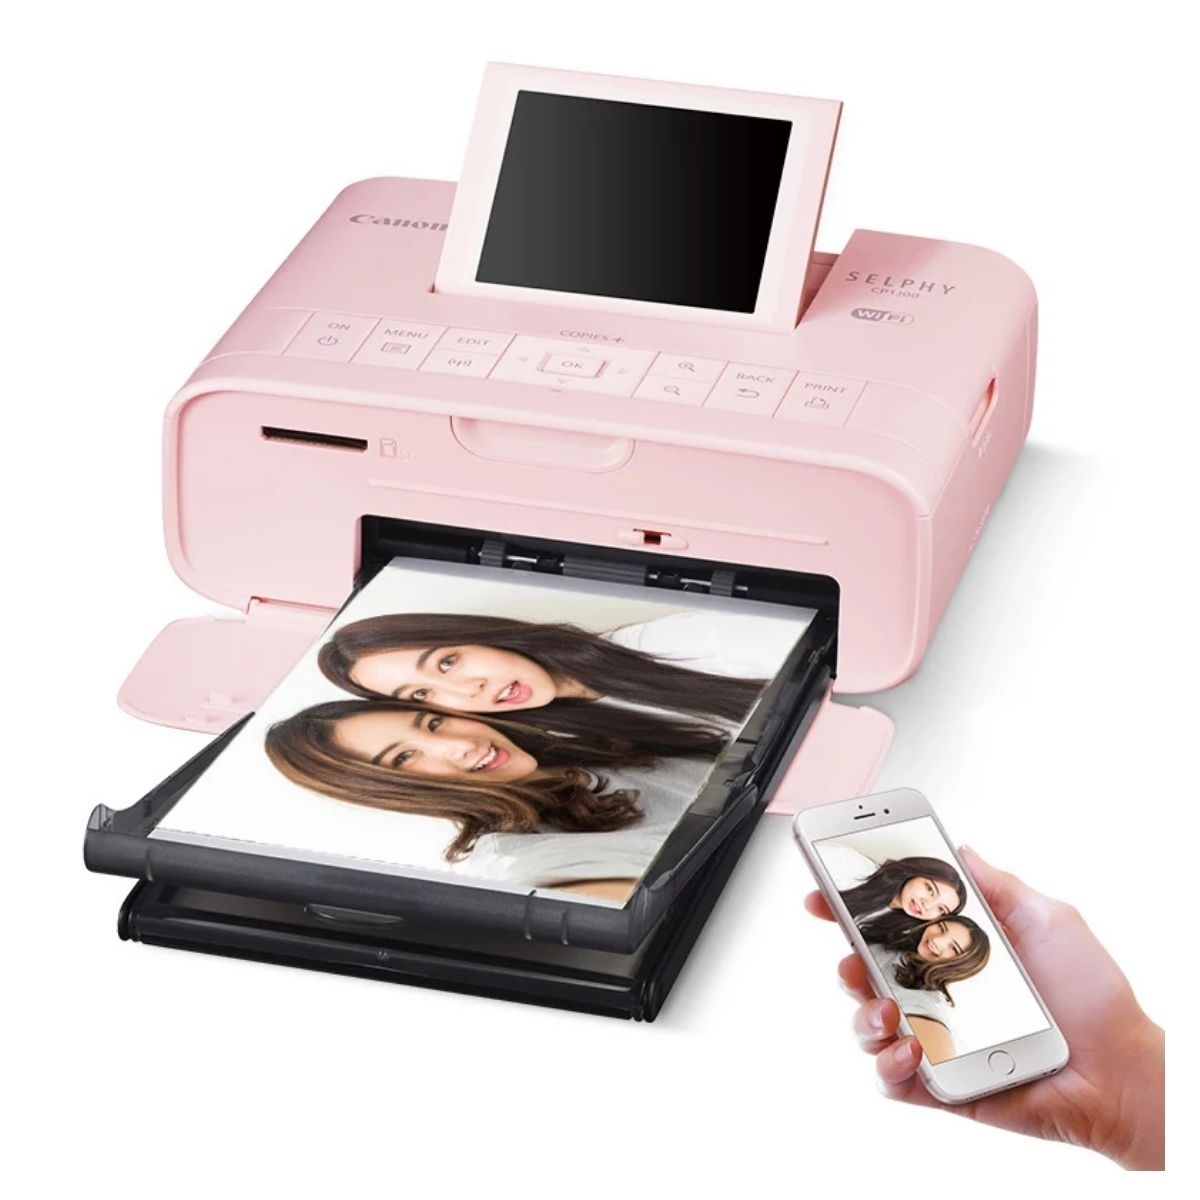 Мини принтер для печати фотографий с телефона